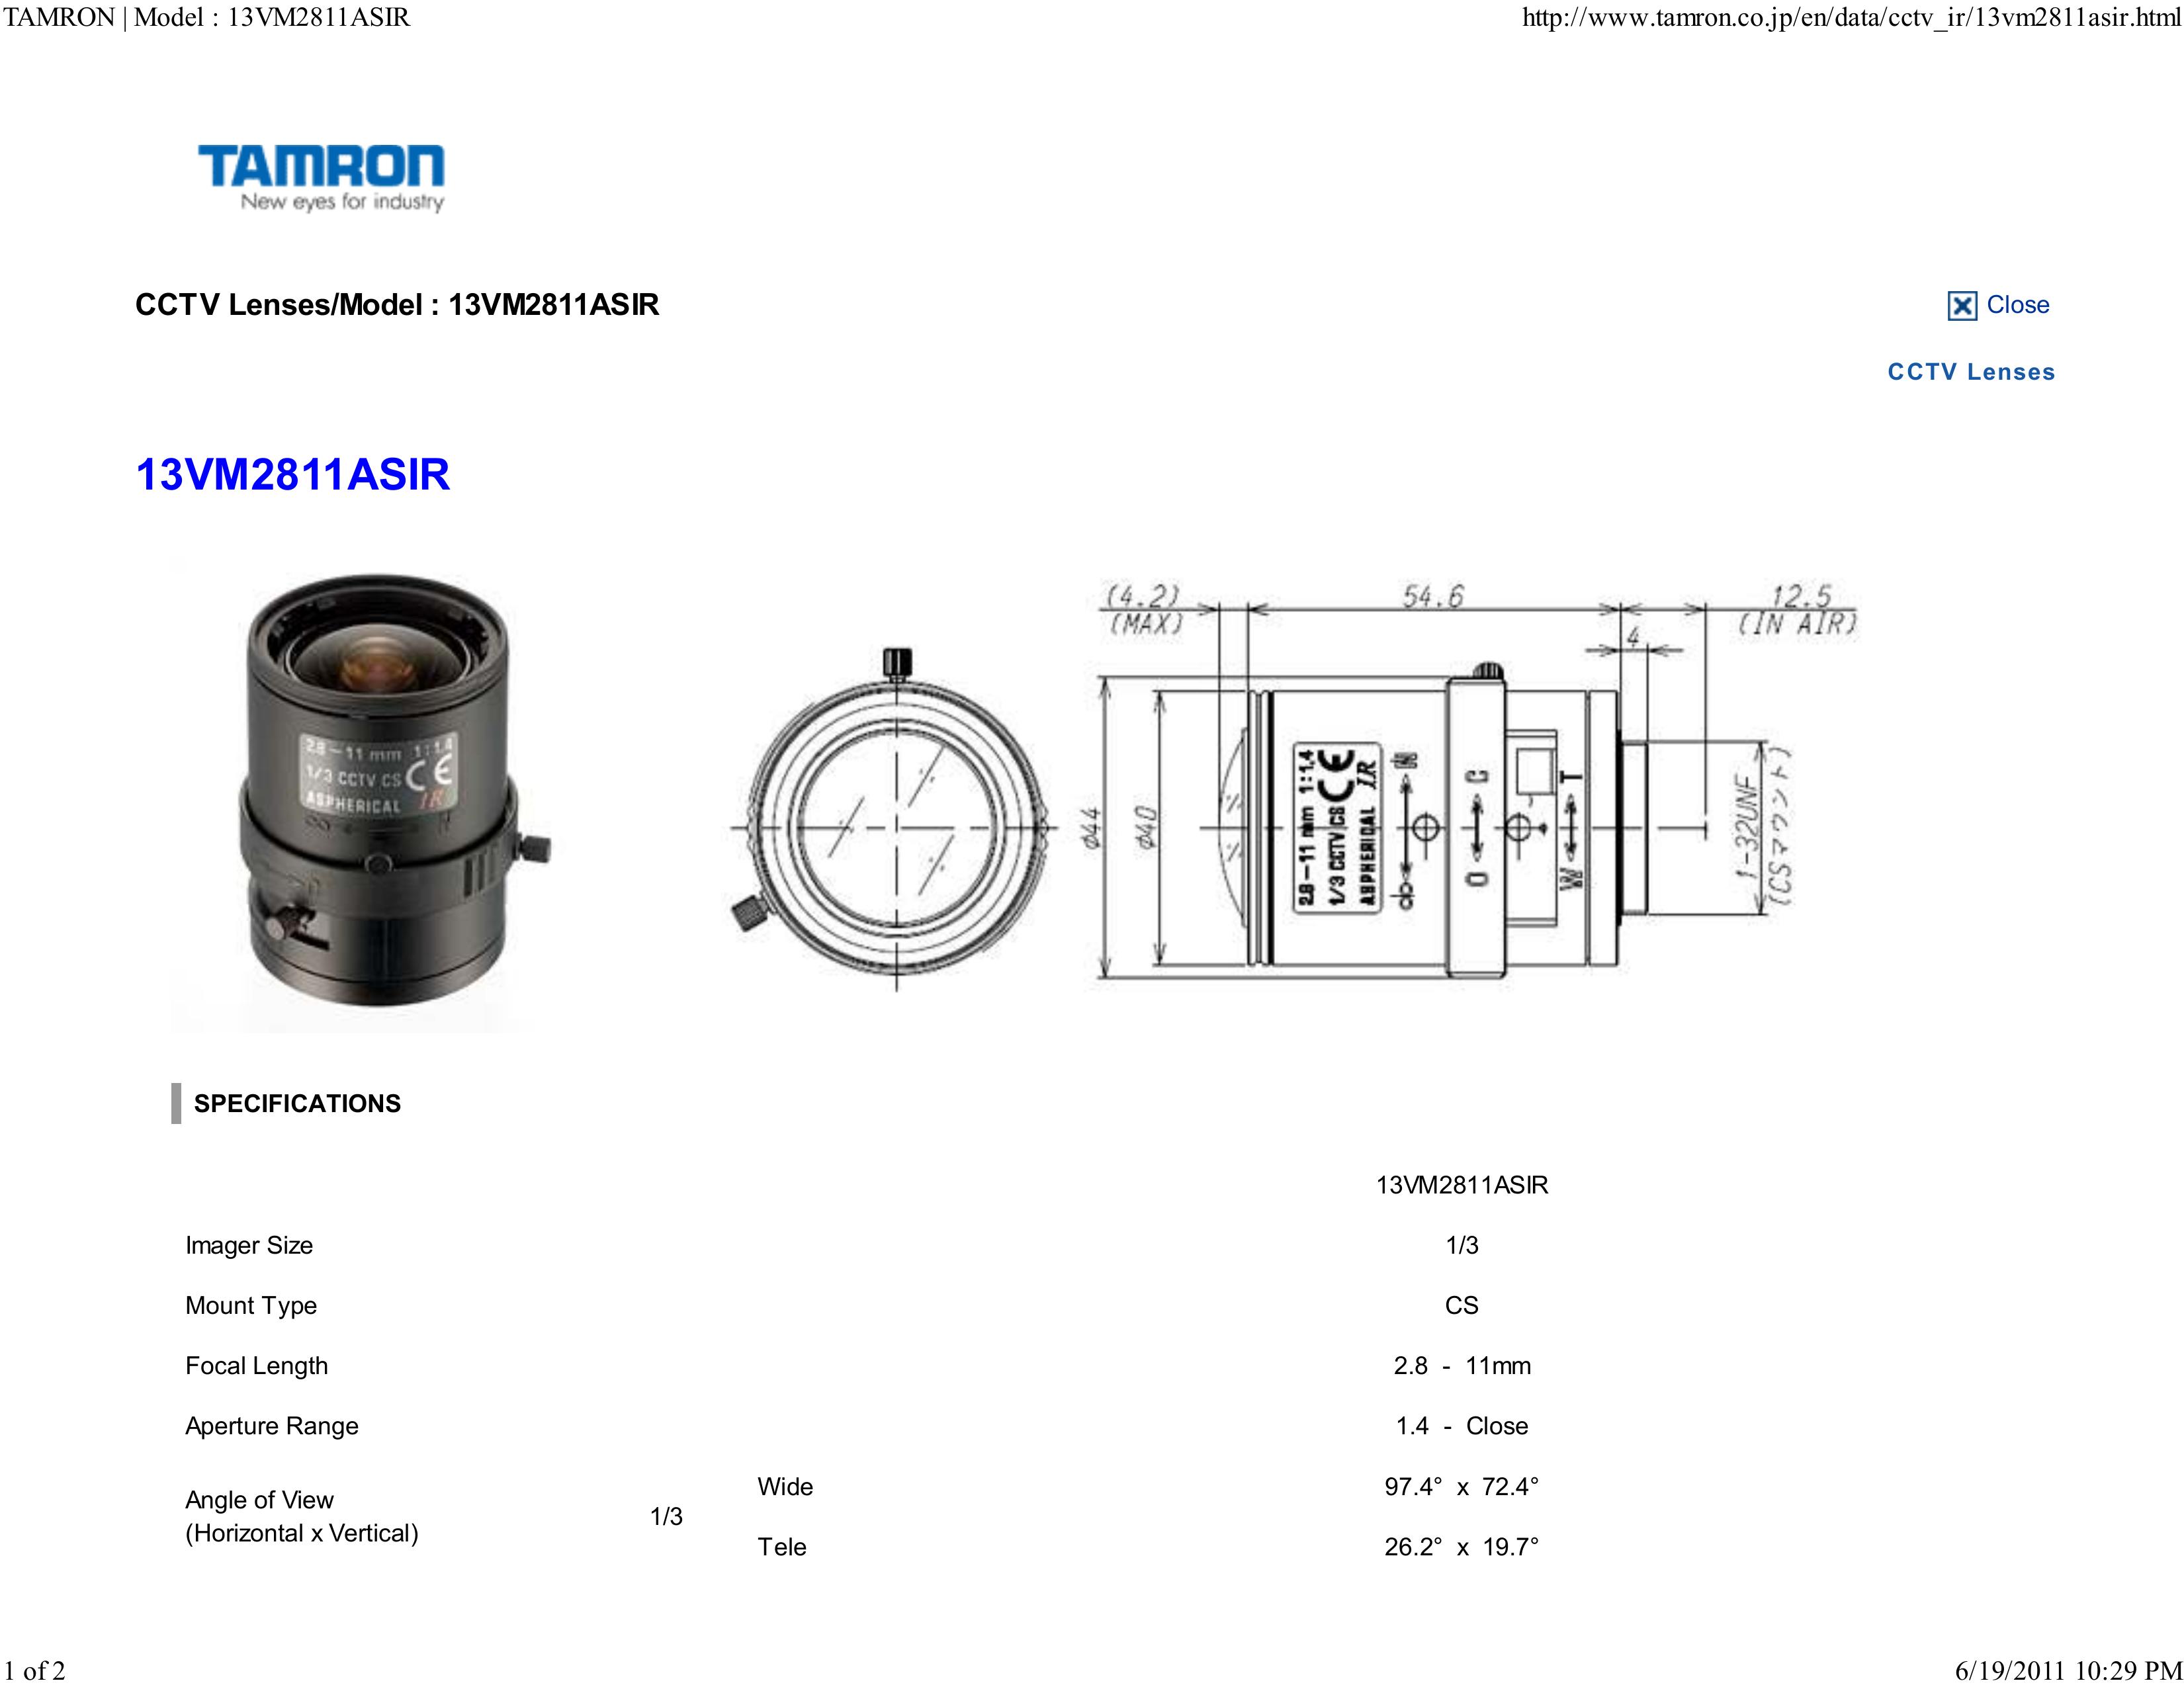 Tamron 13VM2811ASIR Camera Lens User Manual